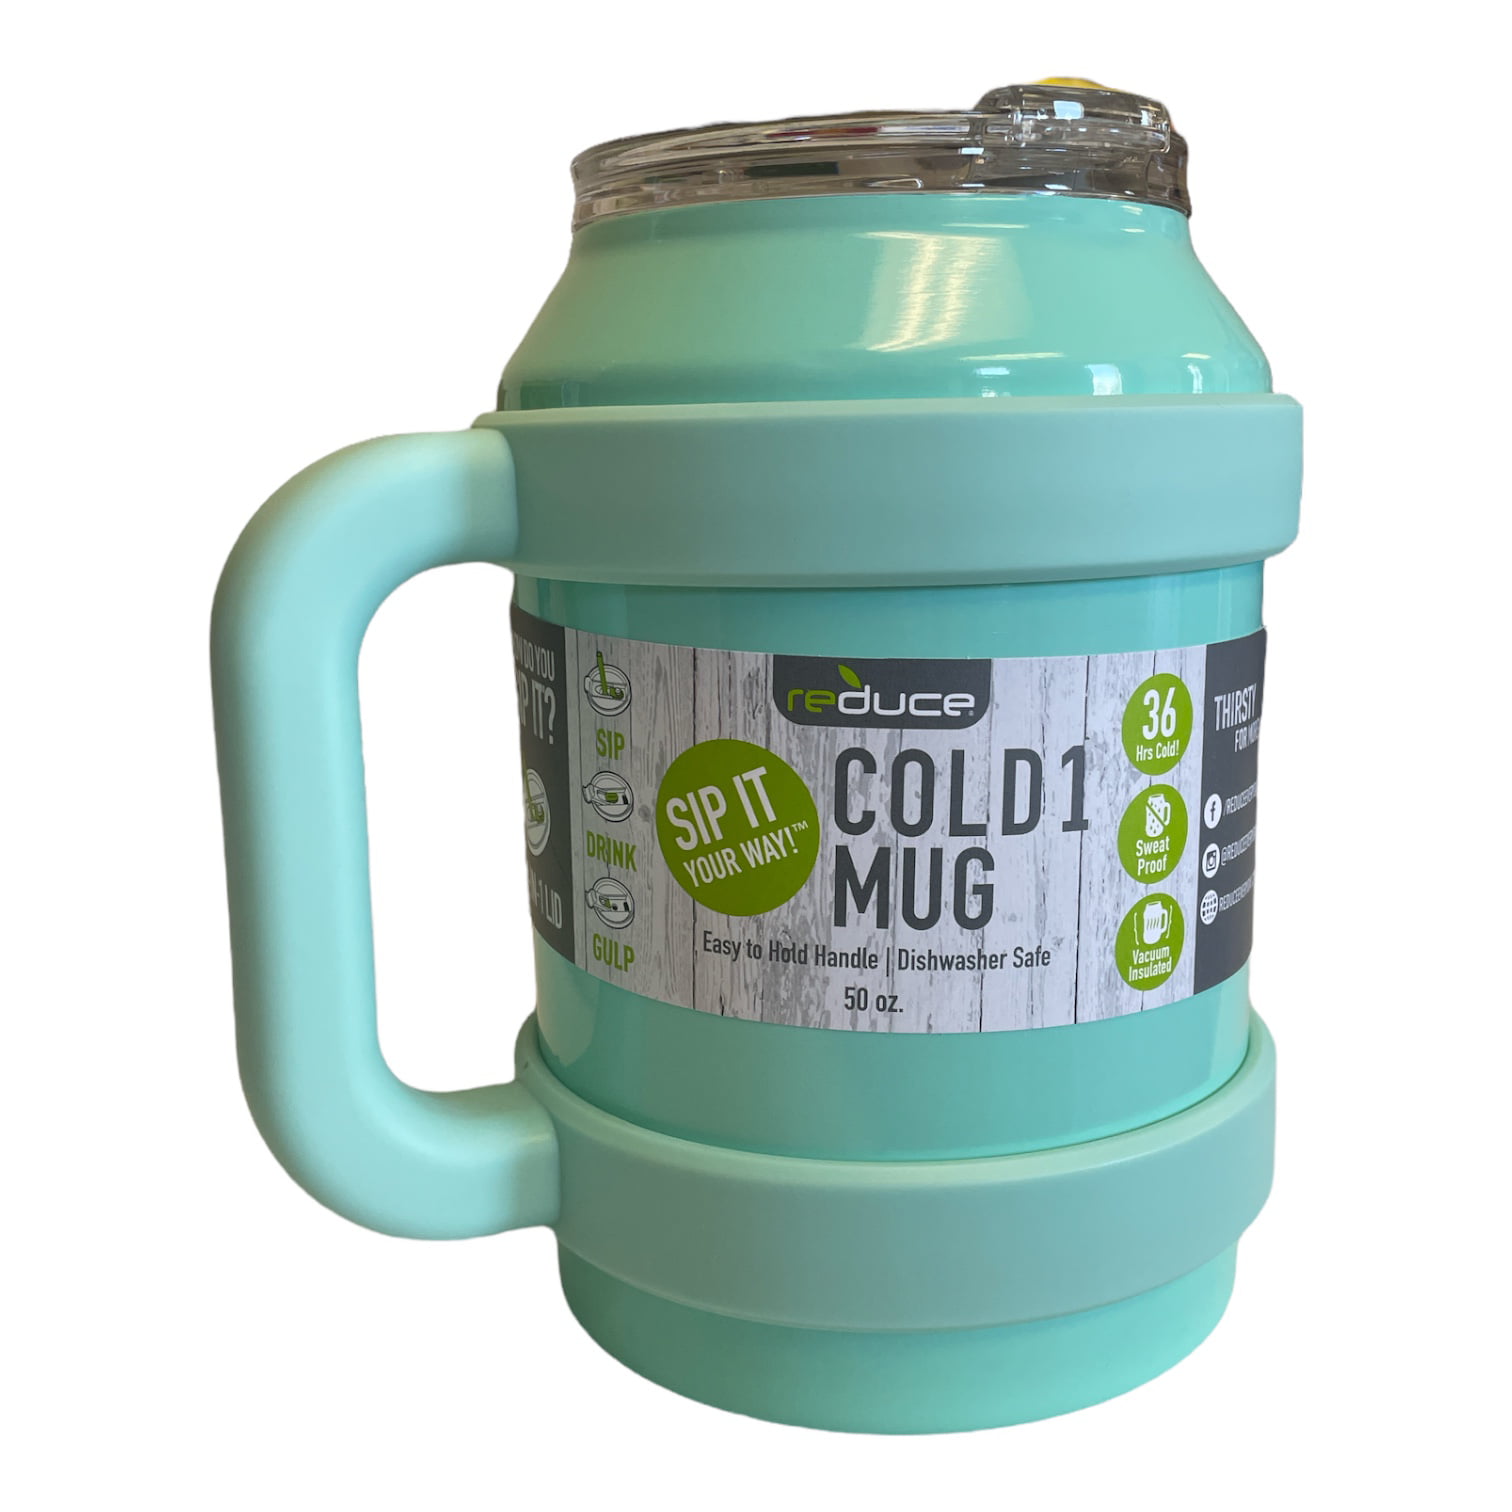 Reduce® COLD-1 Mug - Light Blue, 40 oz - Kroger